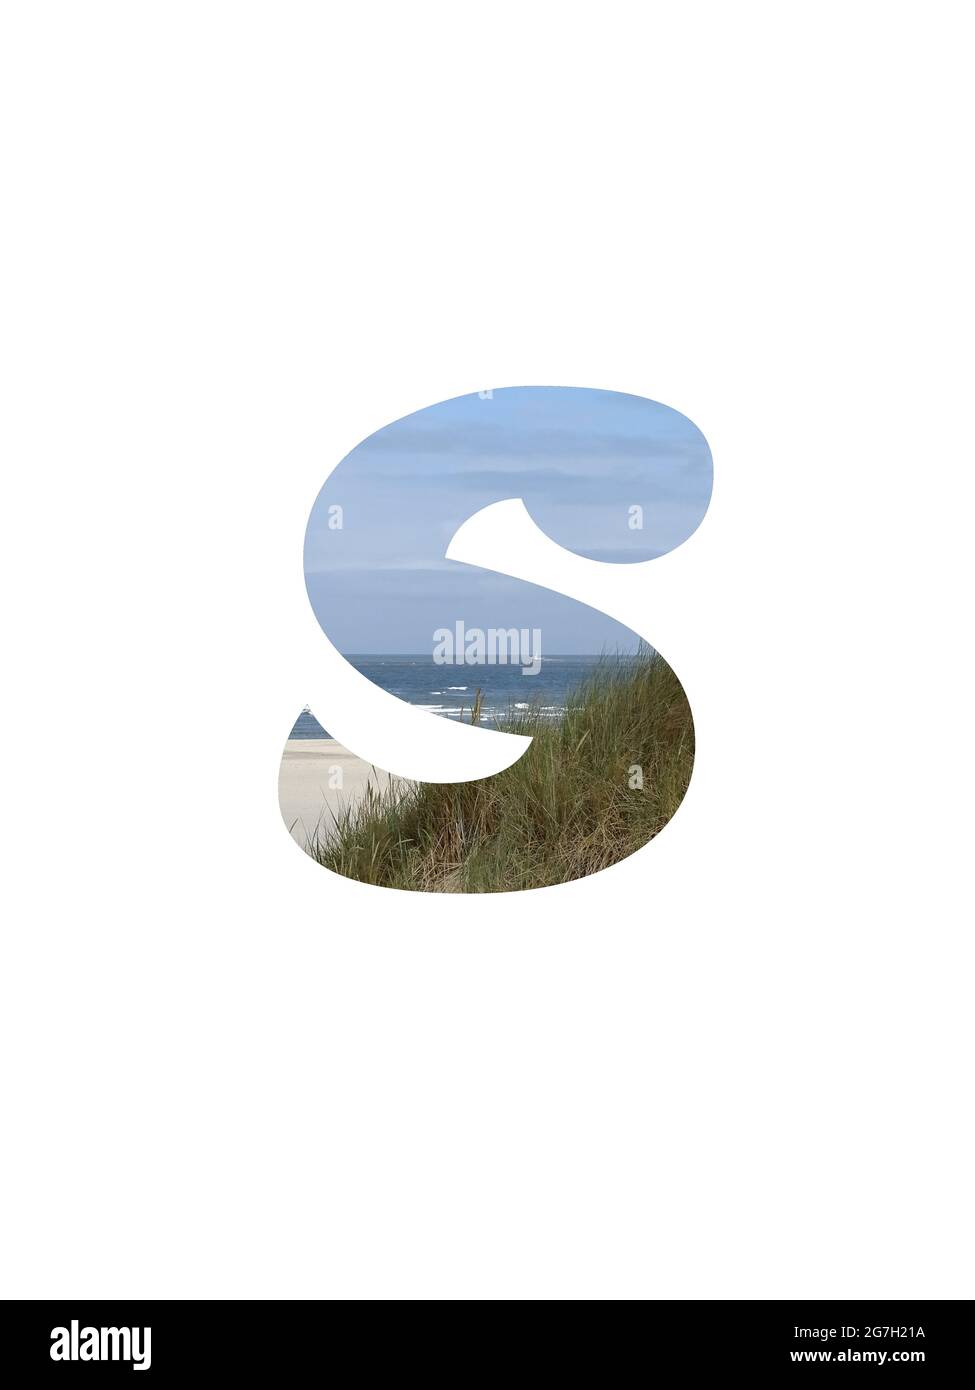 Lettera S dell'alfabeto fatto con un paesaggio con spiaggia, mare, cielo blu e dune, isolato su uno sfondo bianco Foto Stock